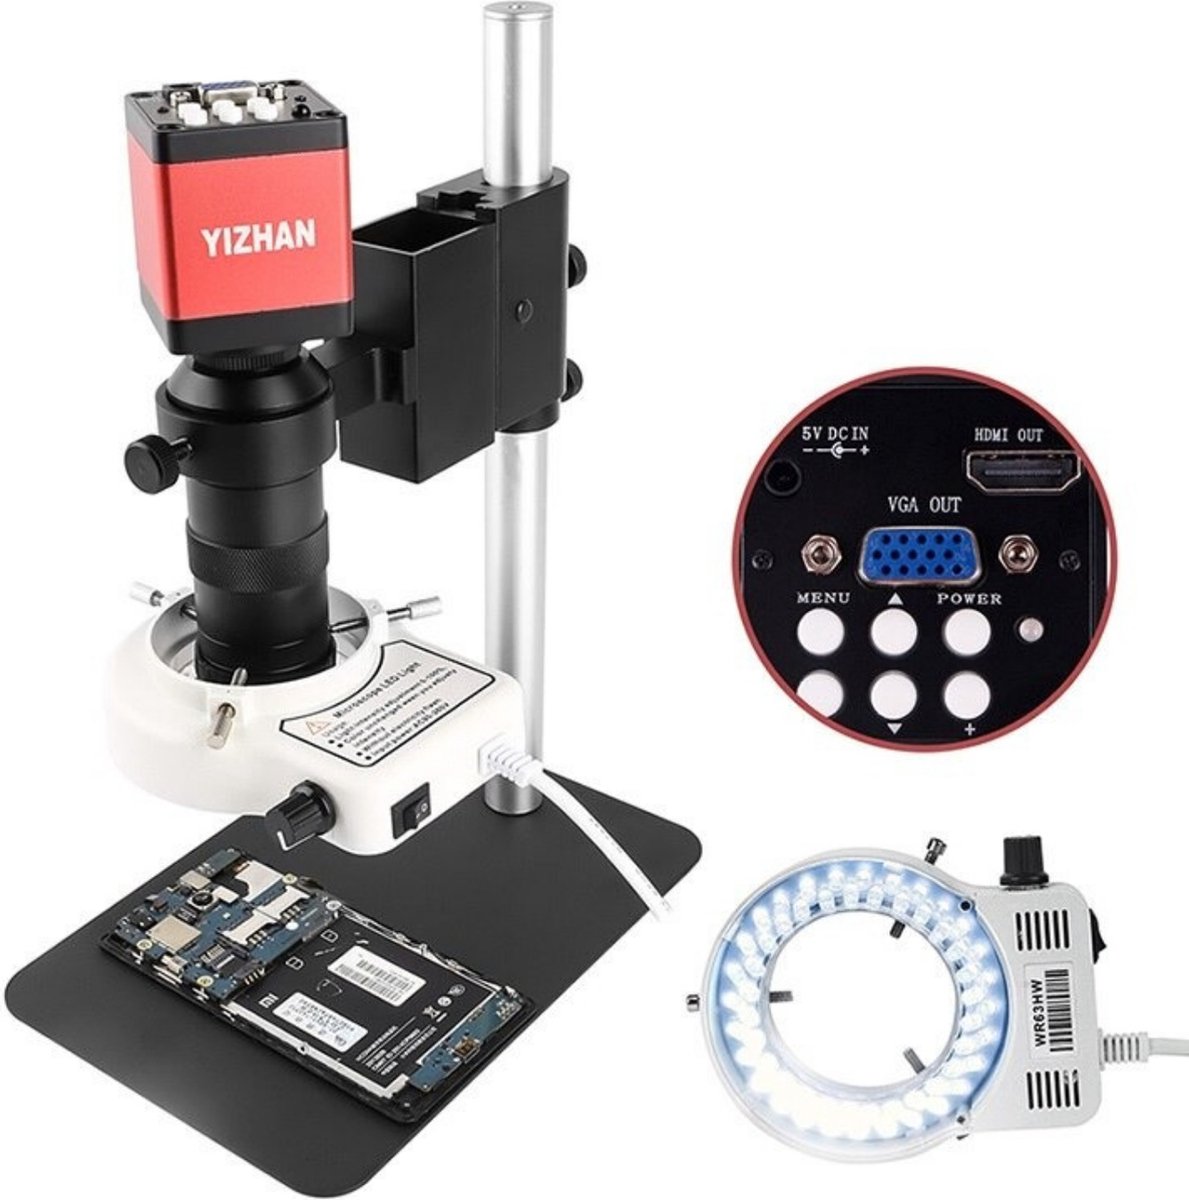 Loft Home Digitale microscoop | USB Microscoop | Microscoop met Camera | Reparatie | Telefoon | Onderzoek | LED | Zwart